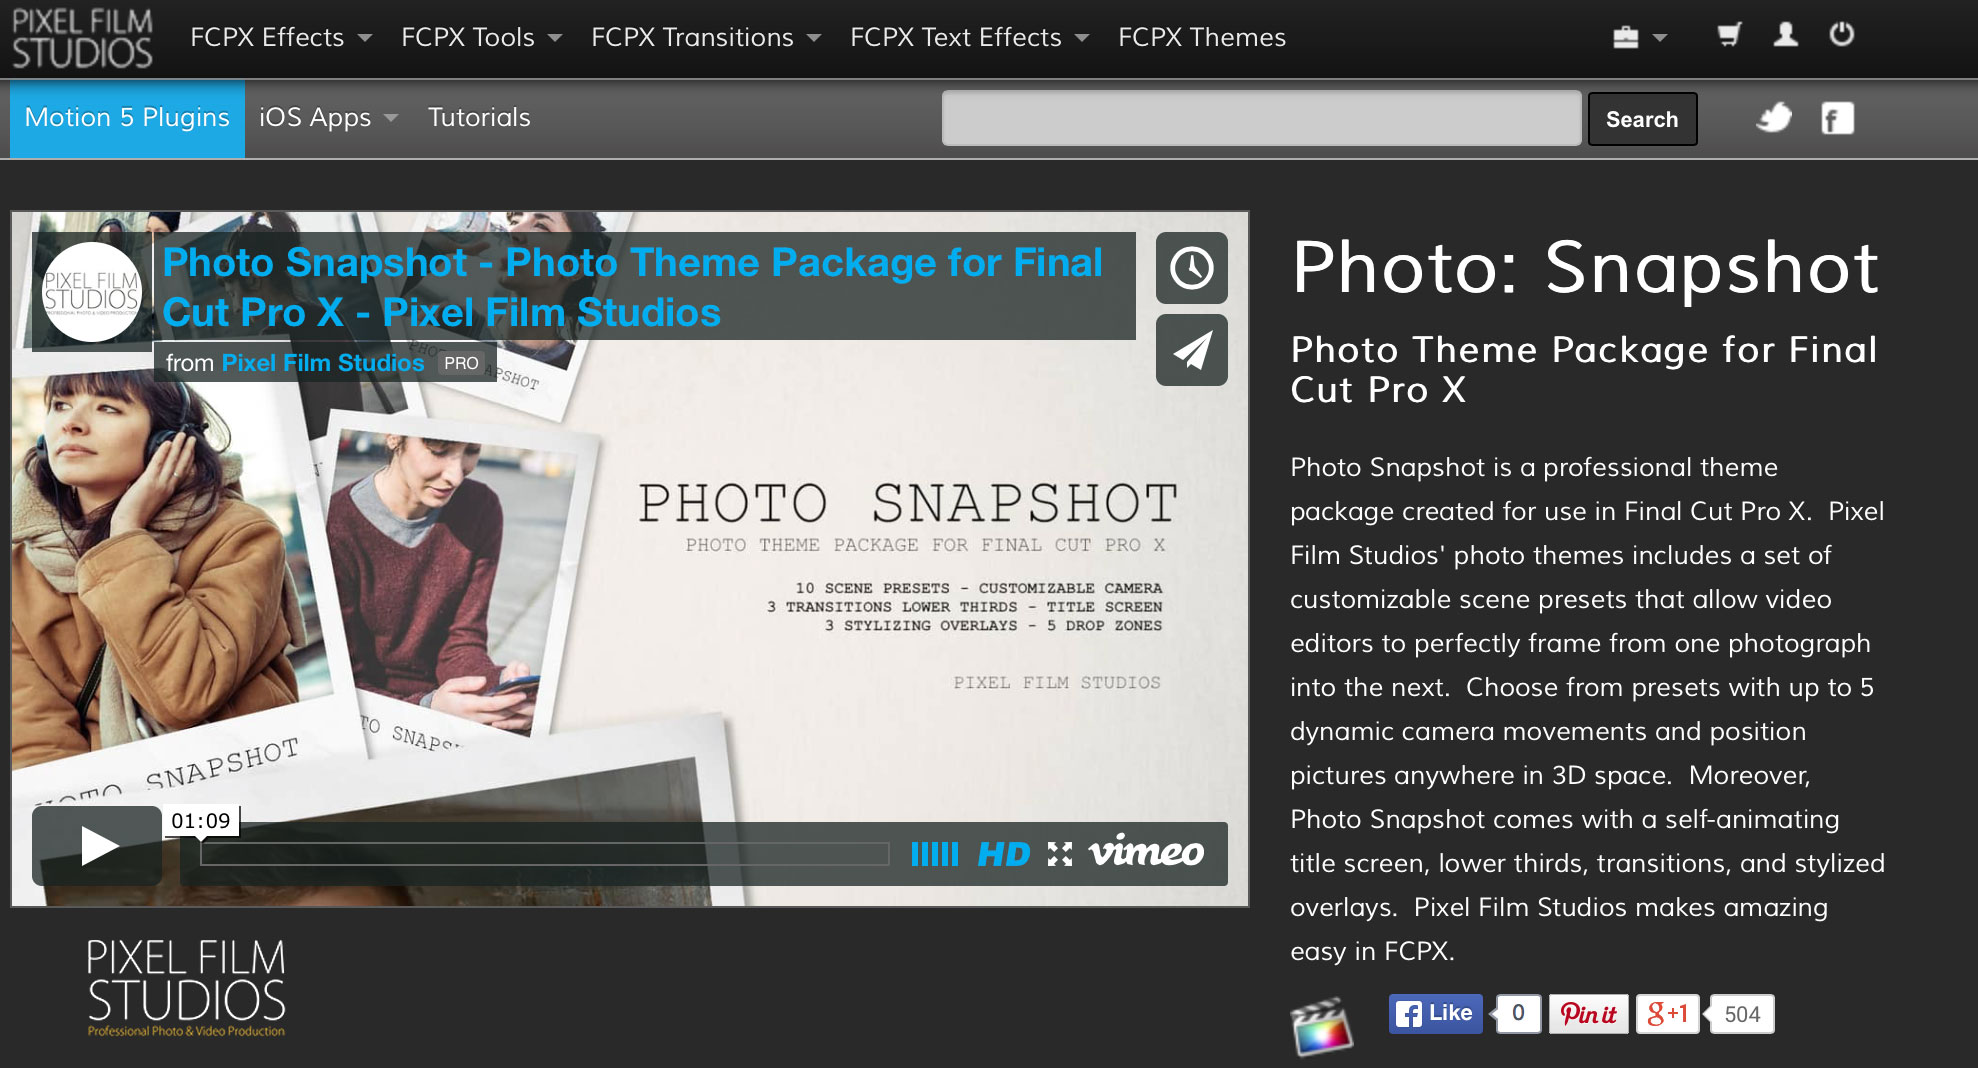 Photo Snapshot from Pixel Film Studios.